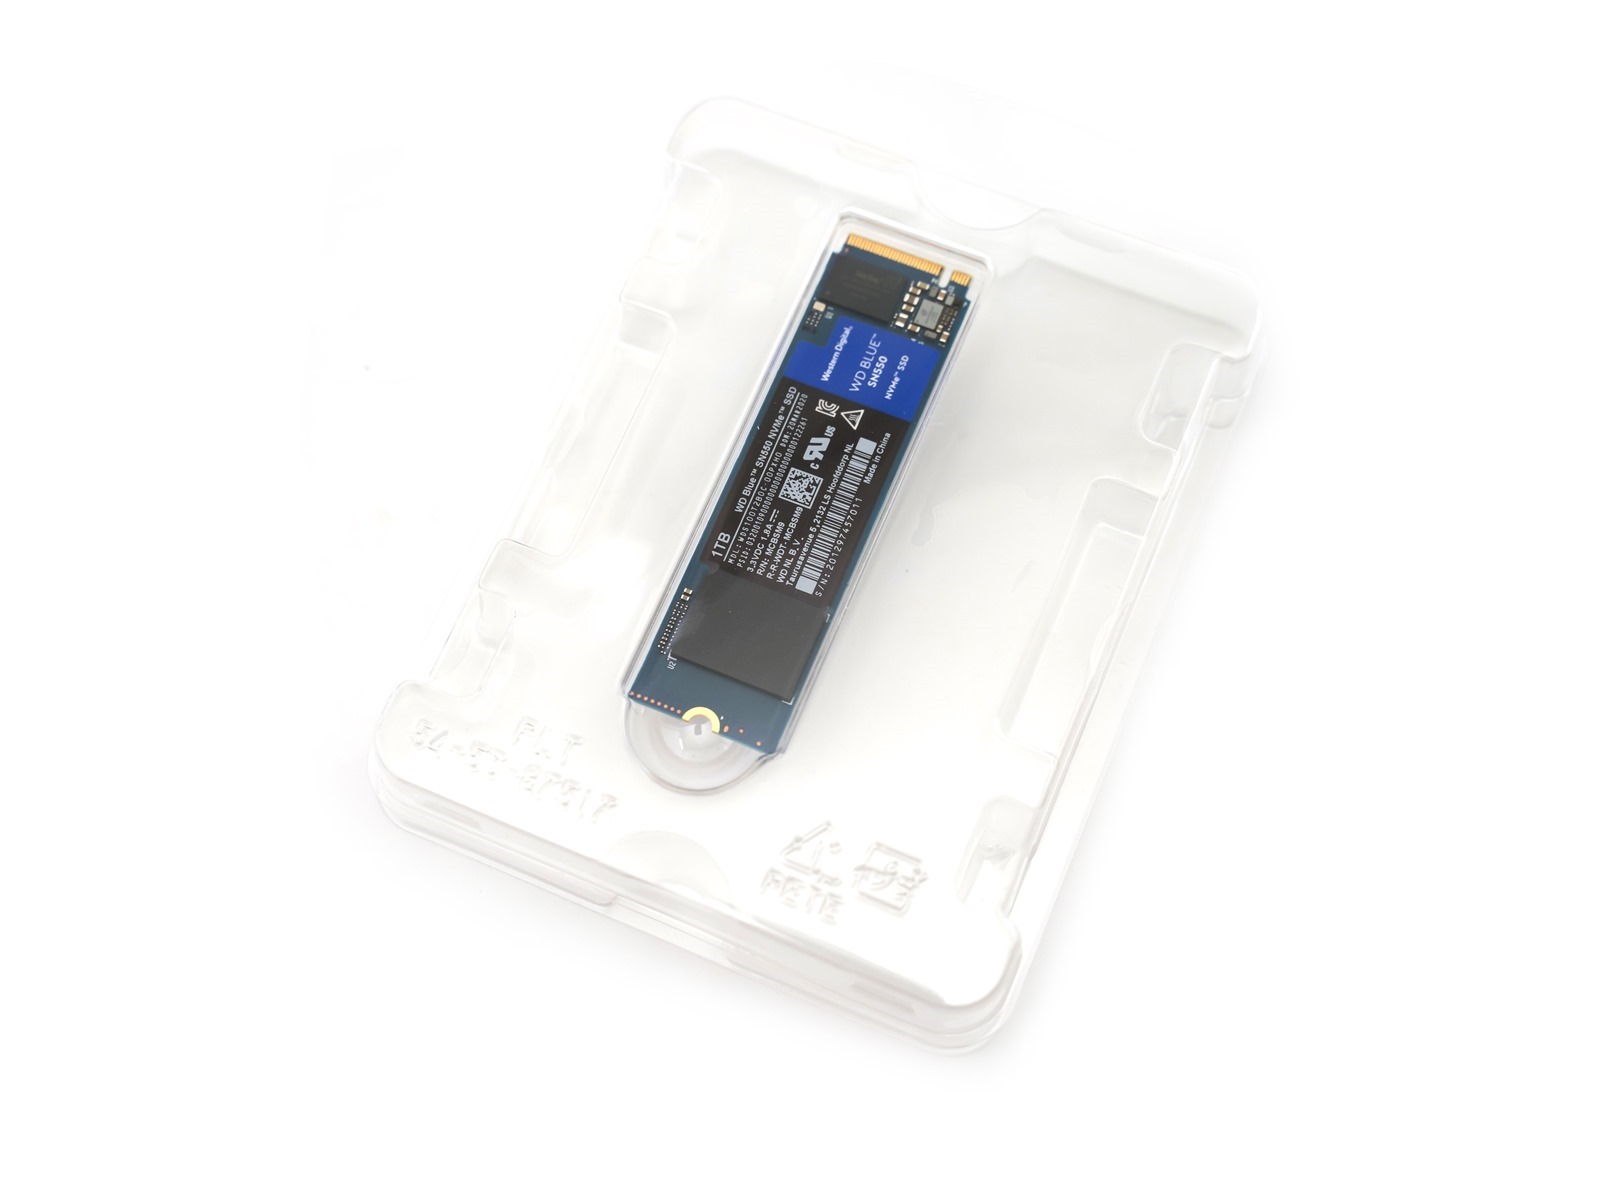 平價高性能 WD Blue SN550 NVMe SSD 電腦裝機升級首選 @3C 達人廖阿輝